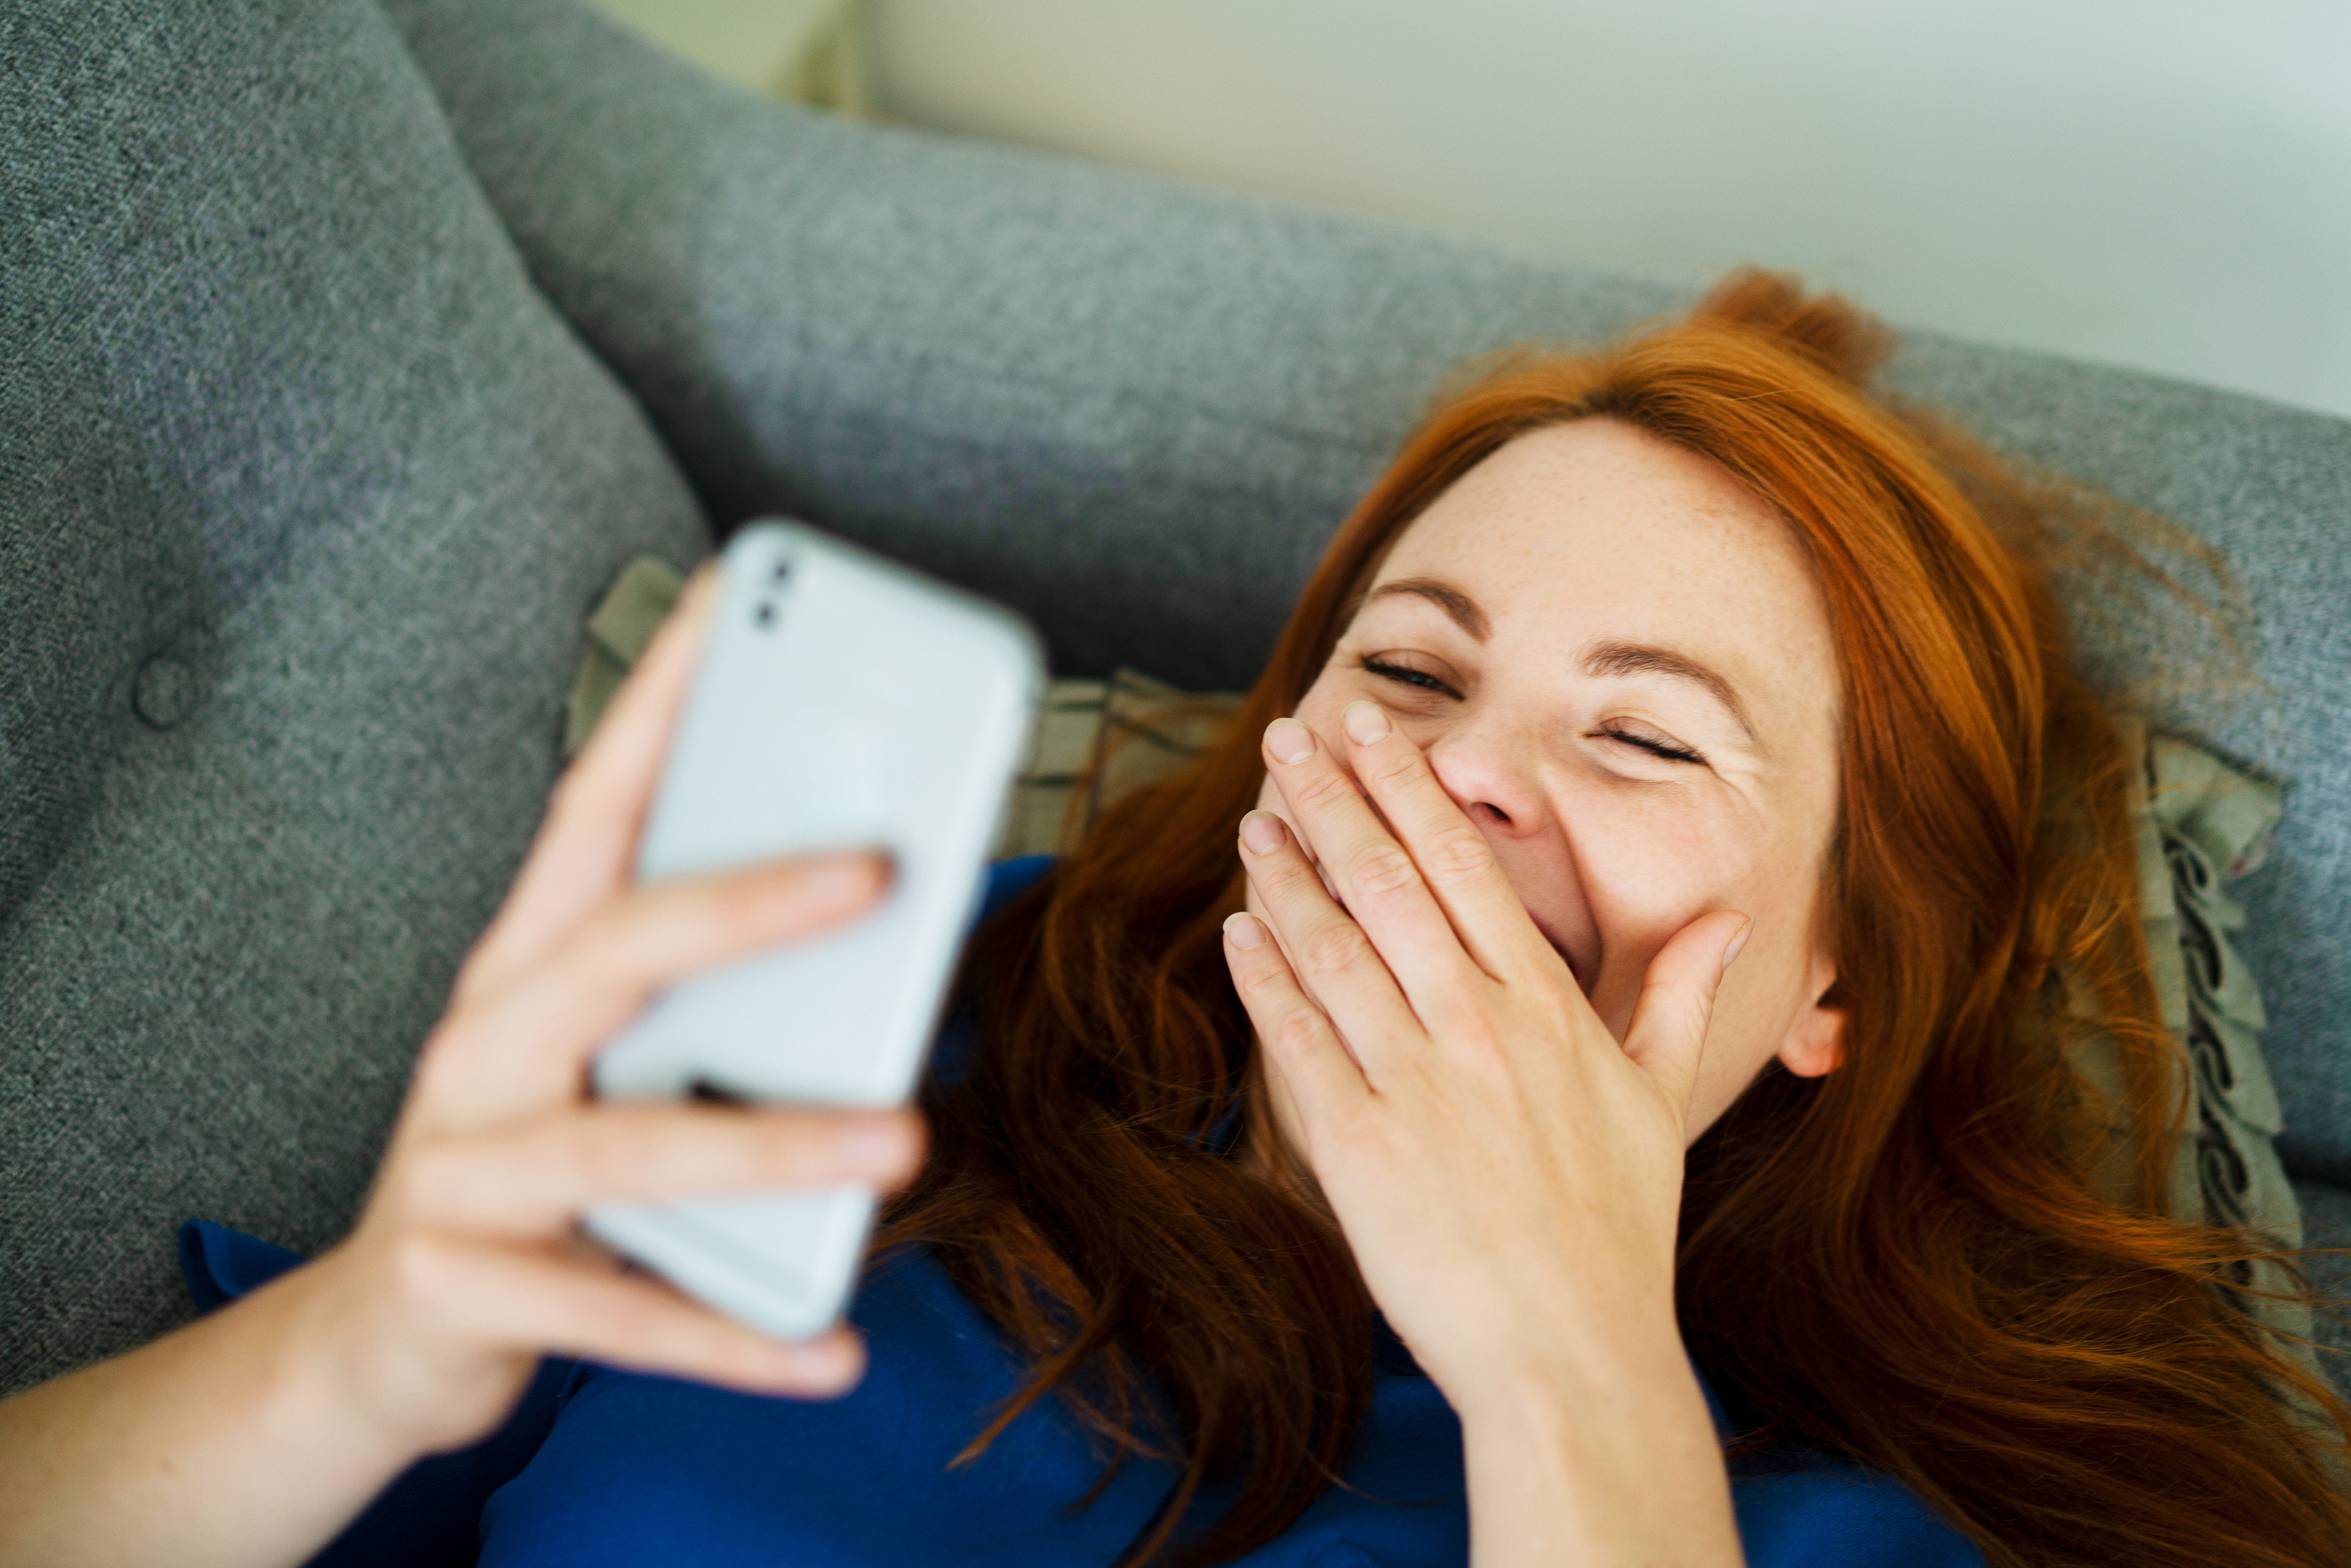 Une femme qui rit en regardant son téléphone | Source : Getty Images